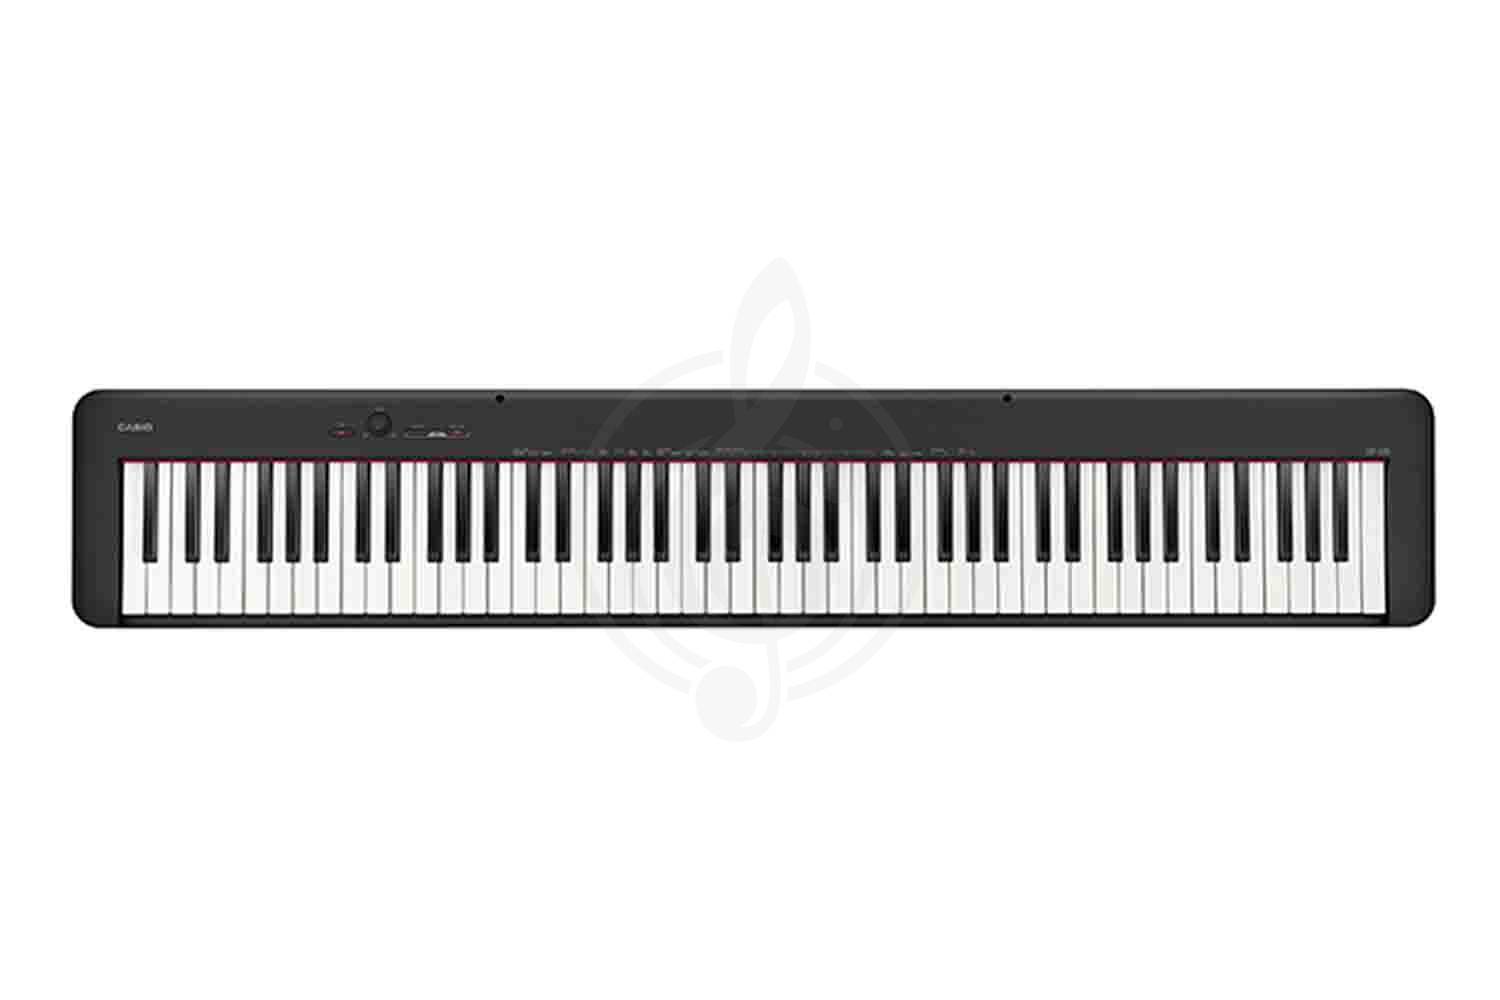 Цифровое пианино Цифровые пианино Casio Casio CDP-S100BK - Цифровое пианино CDP-S100BK - фото 2